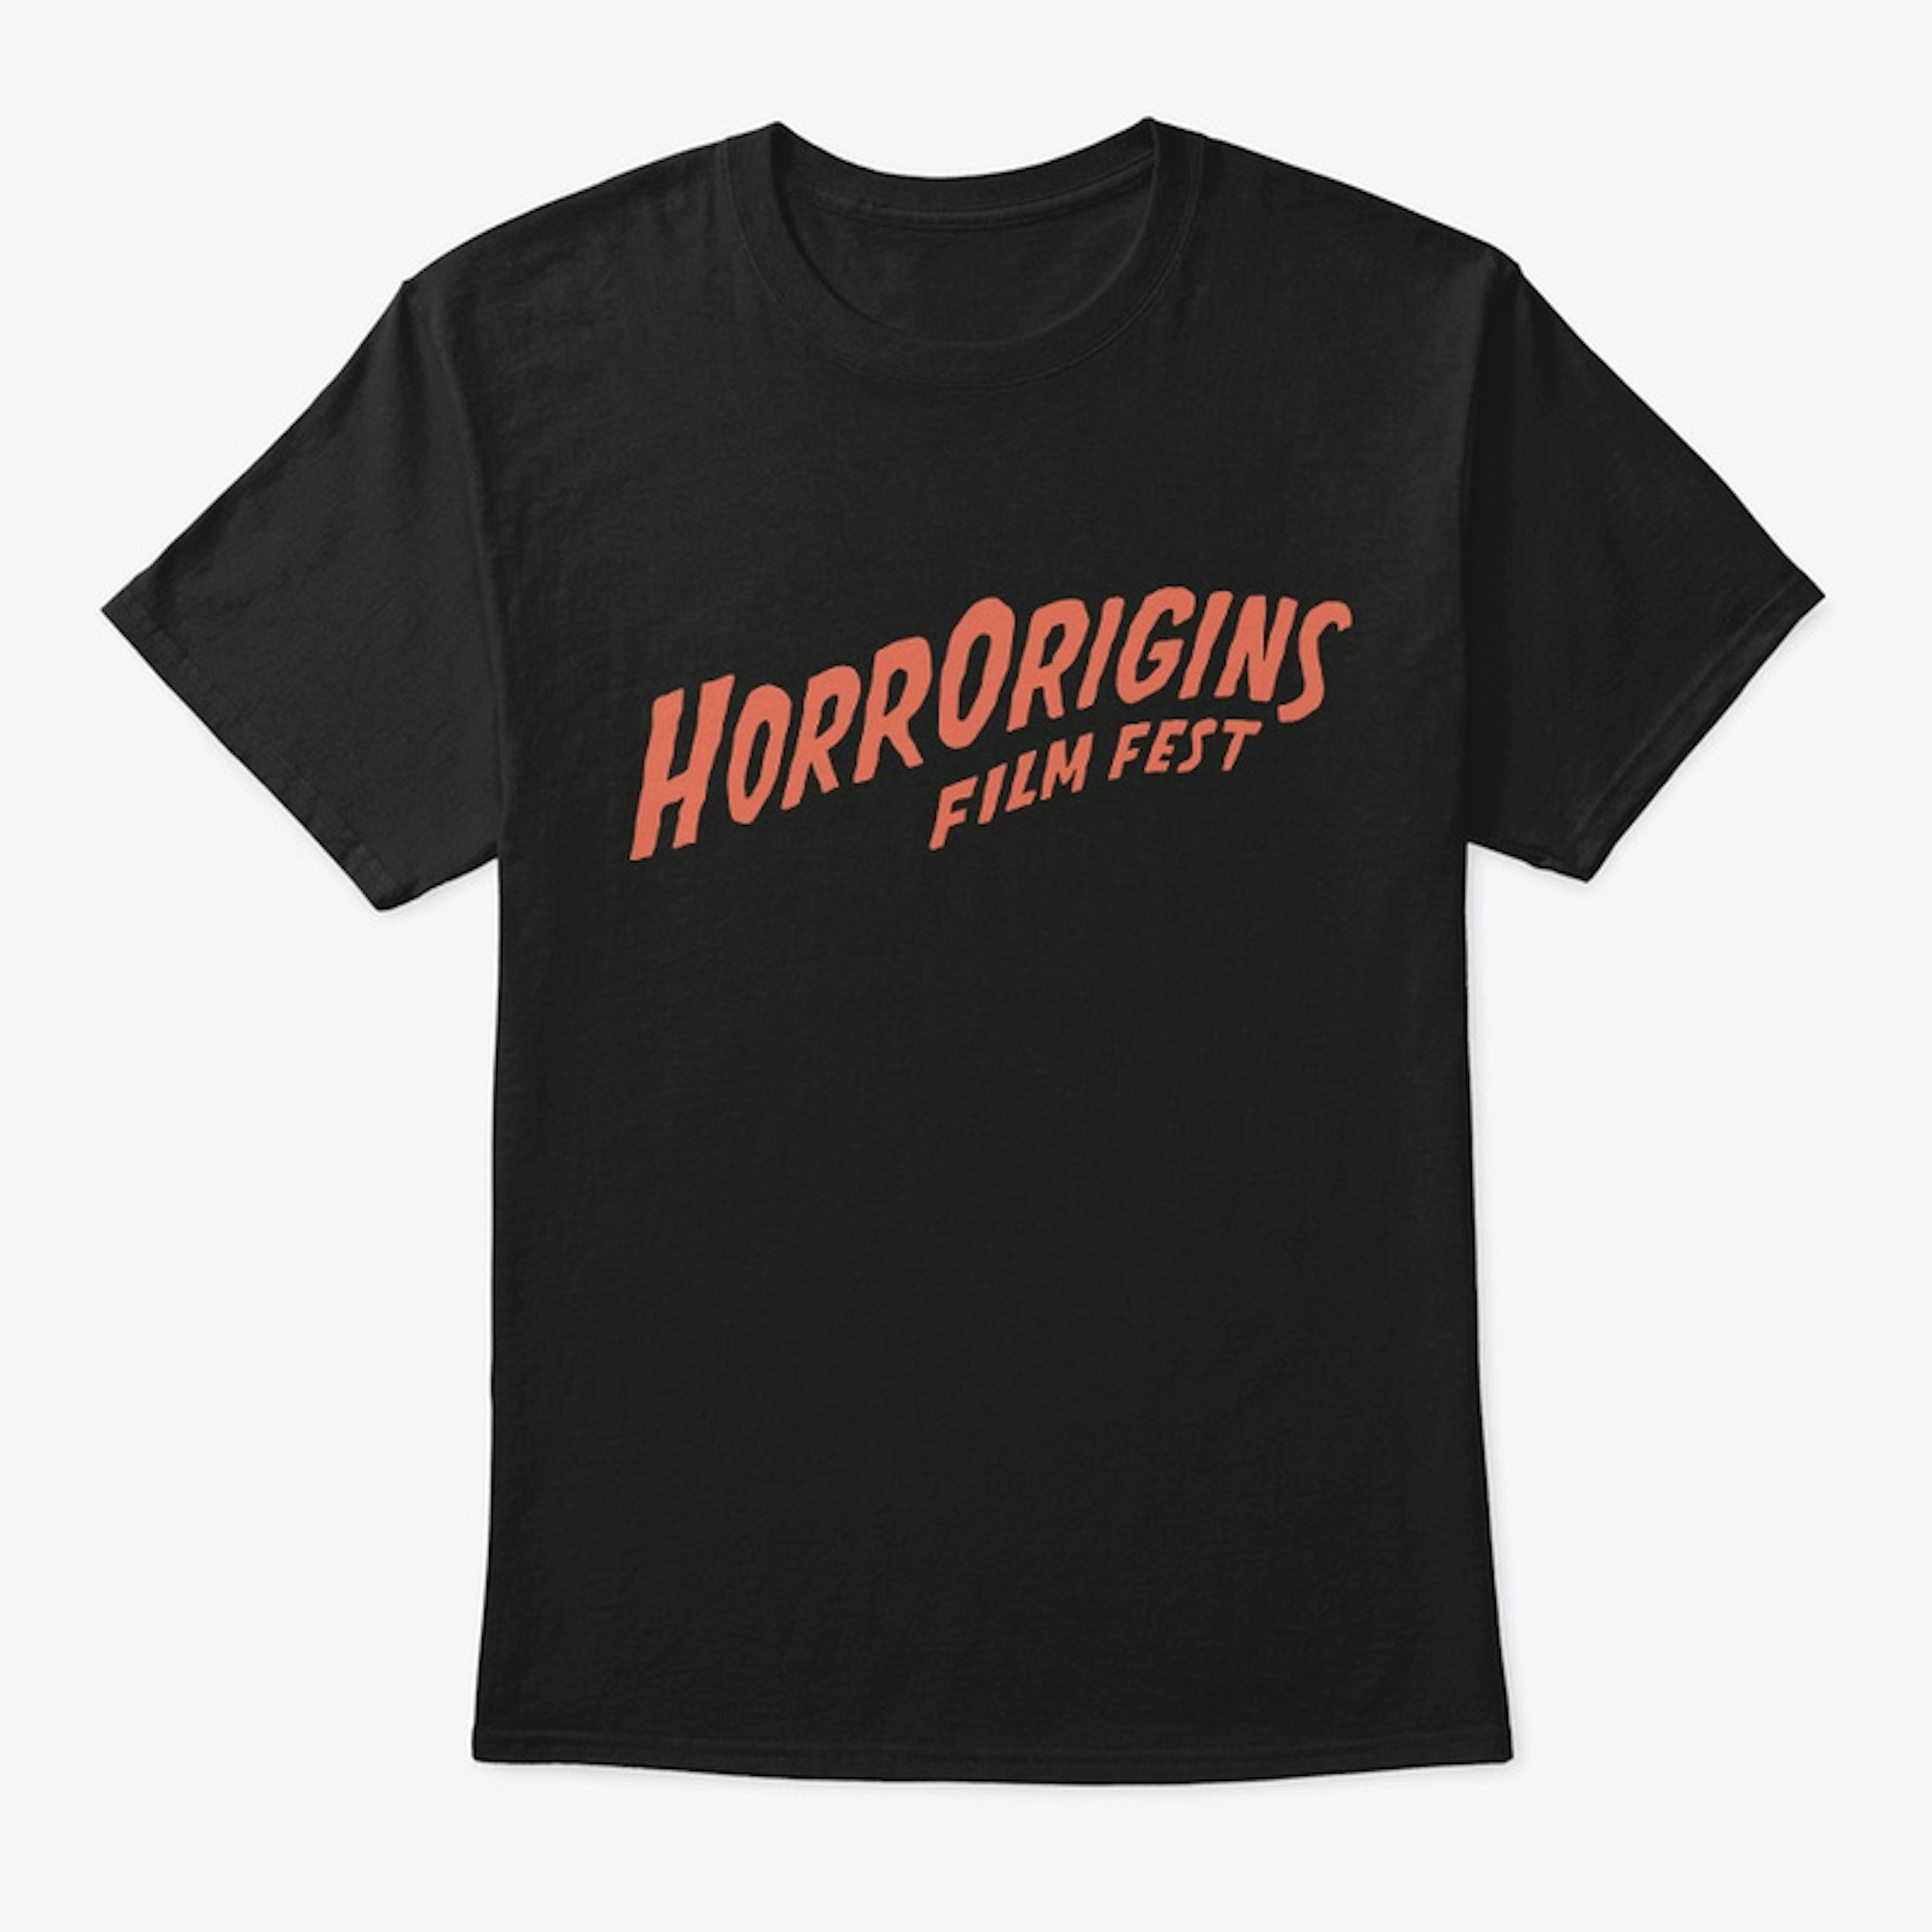 HorrOrigins Film Fest T-Shirt